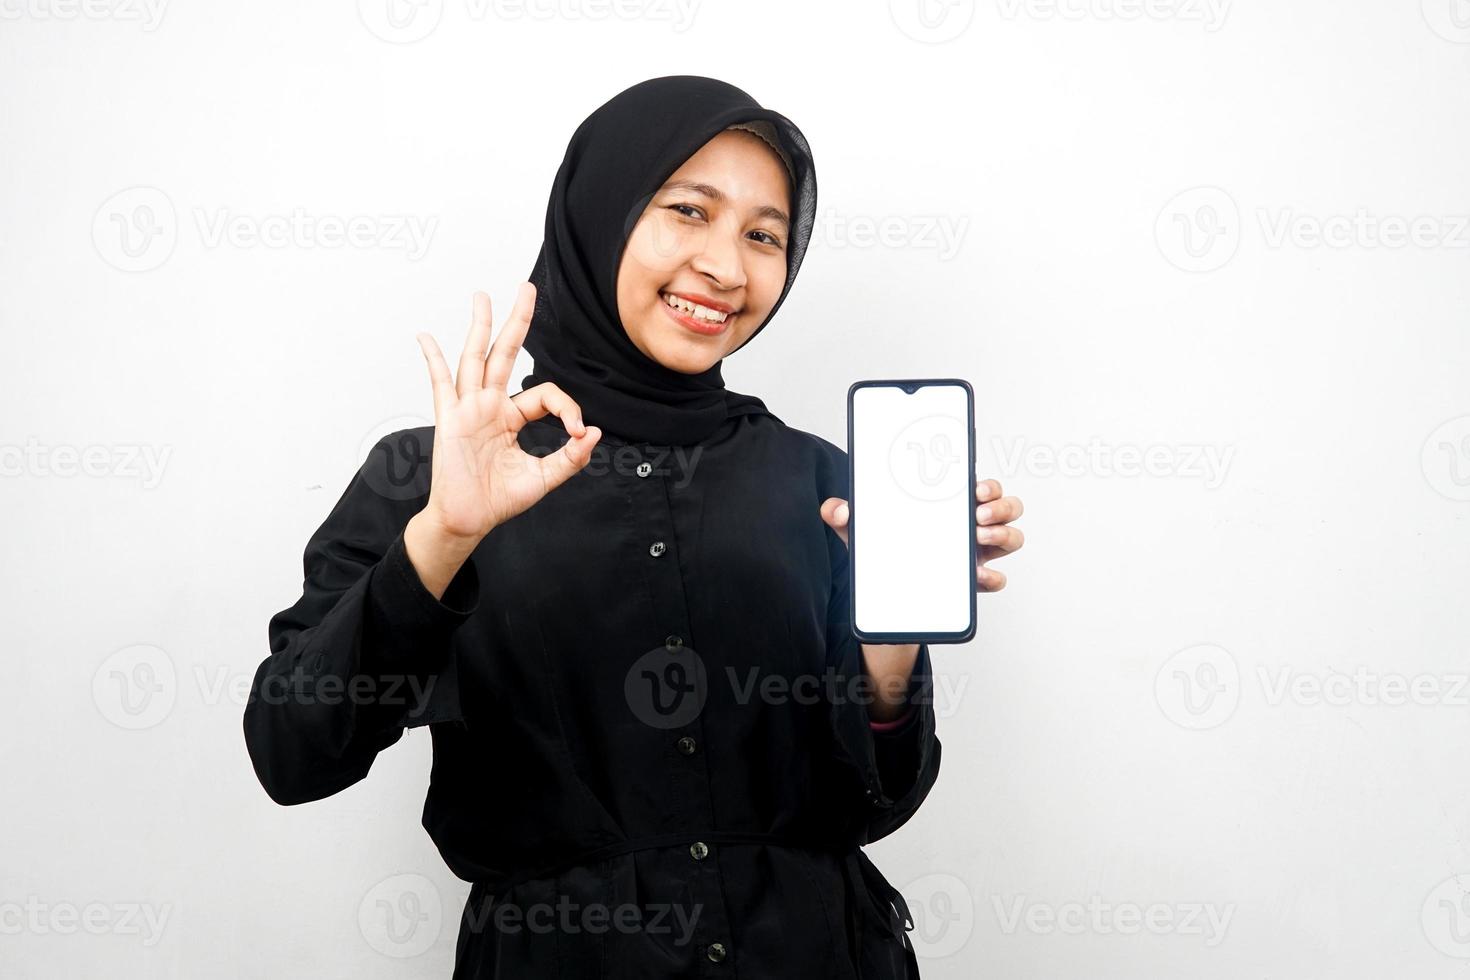 schöne junge asiatische muslimische frau mit den händen, die smartphone halten, anwendung fördern, selbstbewusst und aufgeregt lächeln, ok sign hand, gute arbeit, erfolg, isoliert auf weißem hintergrund foto